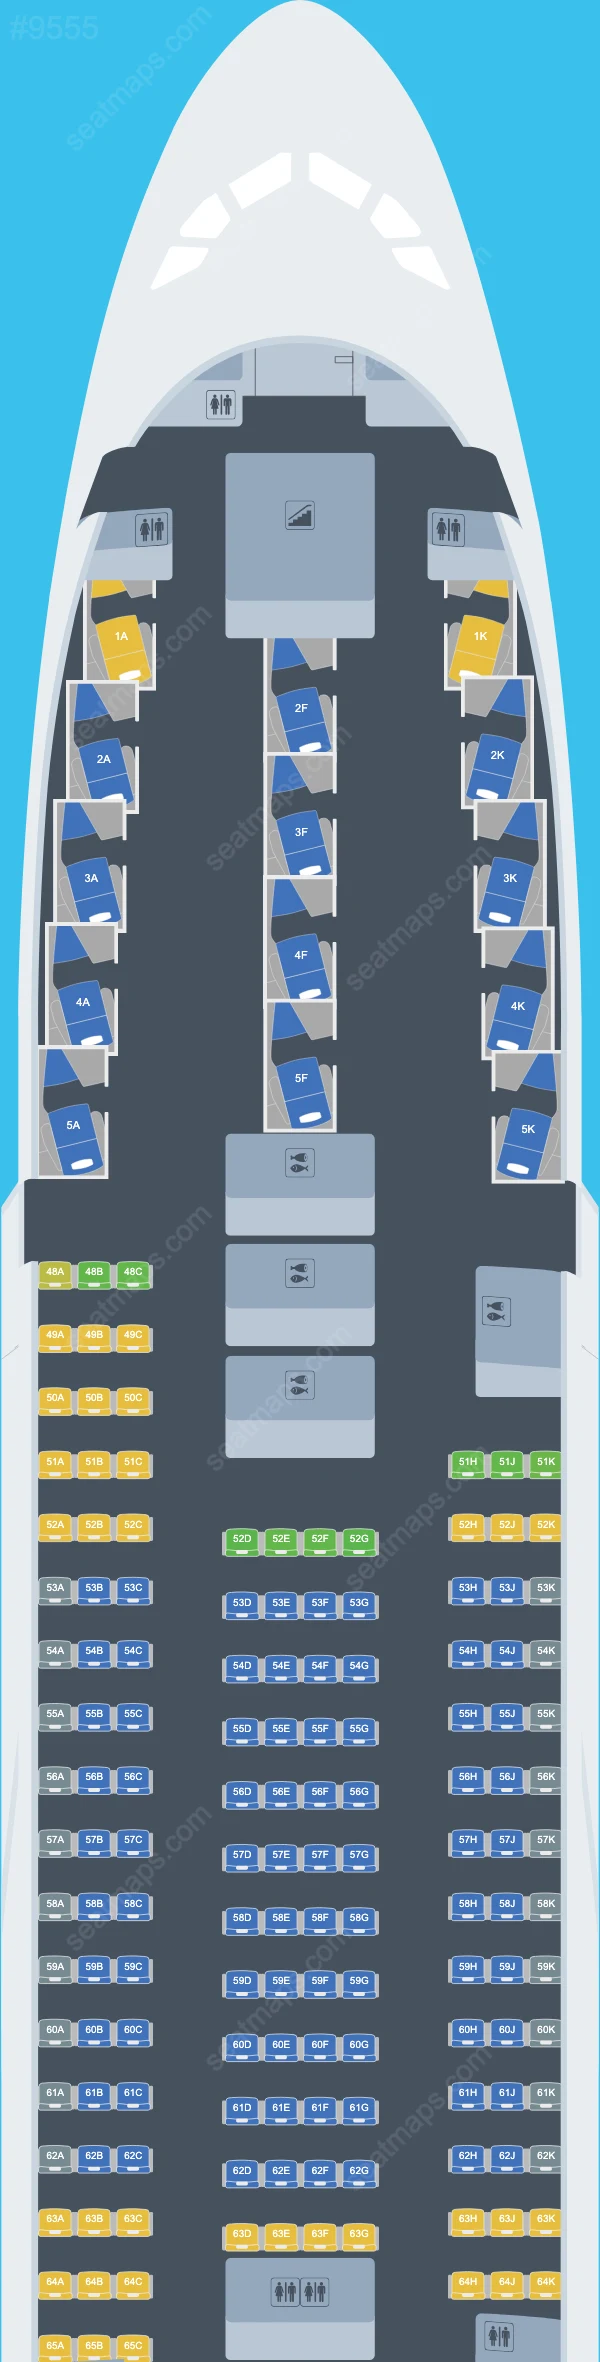 Qantas Airbus A380 Seat Maps A380-800 V.1